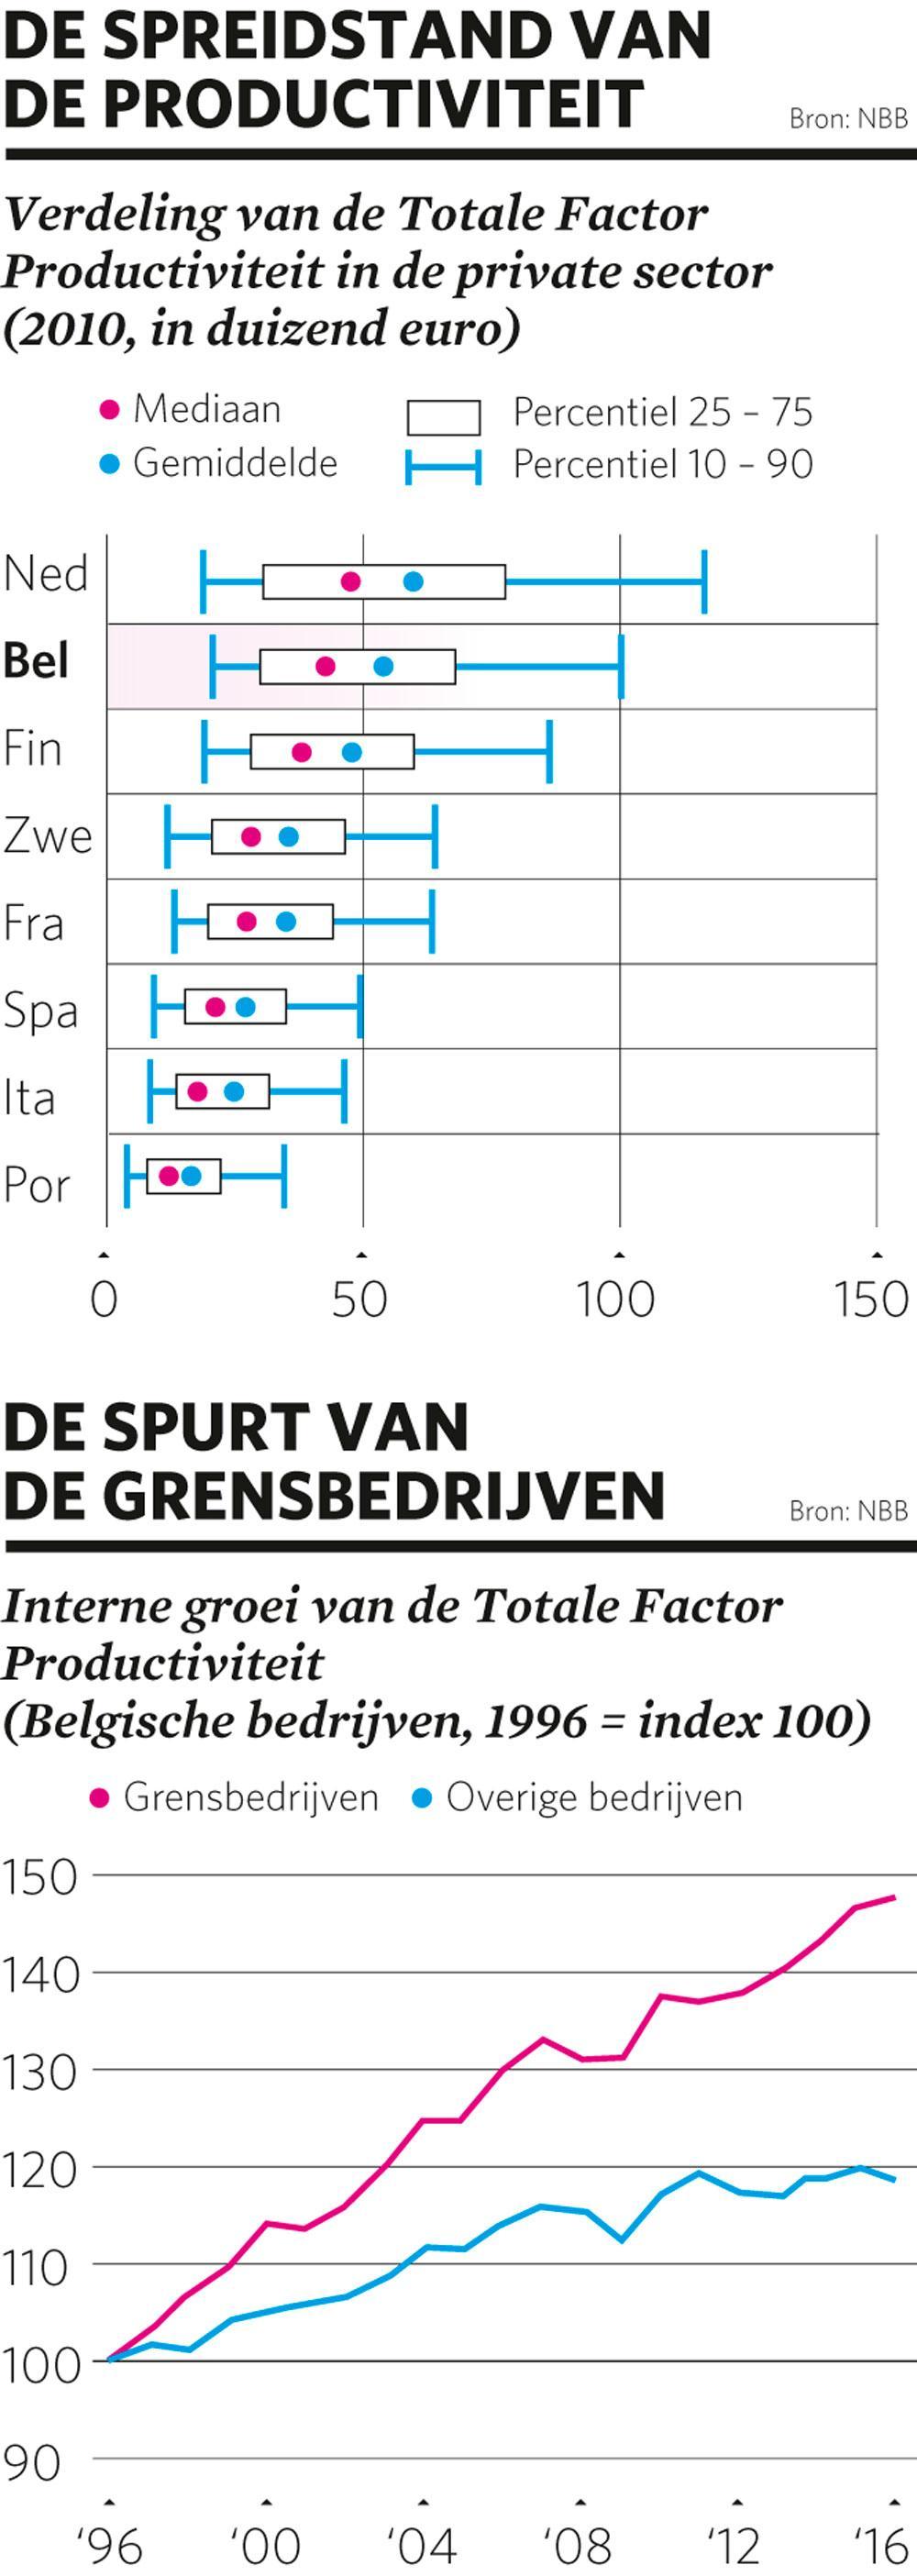 Veel Belgische bedrijven dragen amper bij tot de welvaartsgroei